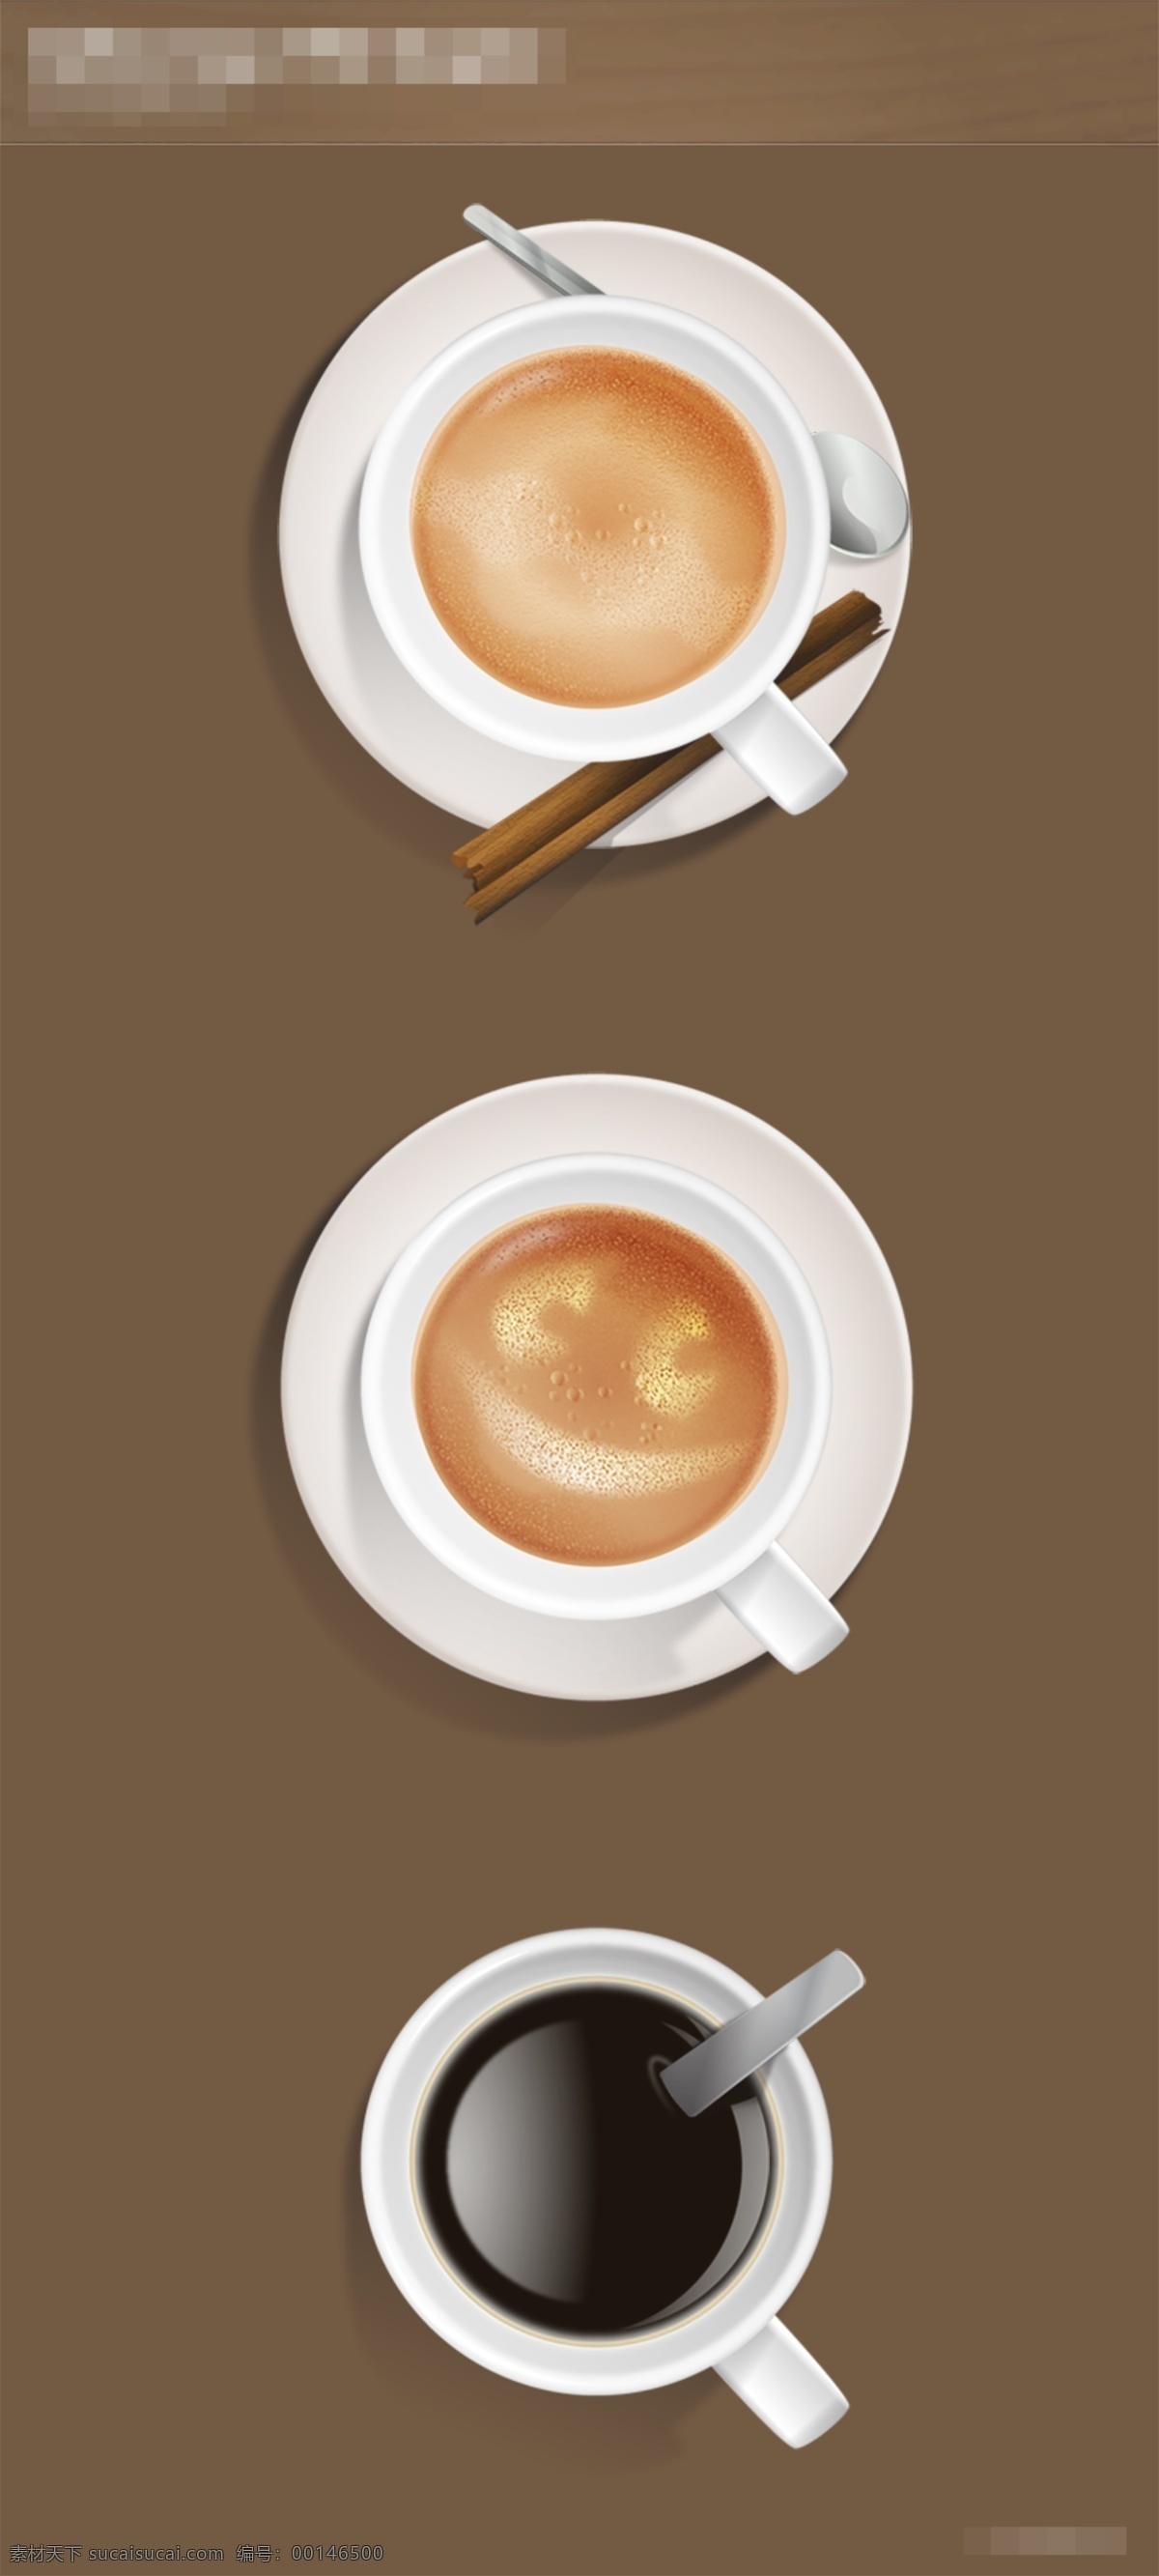 笑脸 唯美 咖啡杯 图标 咖啡杯图标 icon icon设计 icon图标 咖啡 咖啡杯套装 装满 杯子 桌面上的杯子